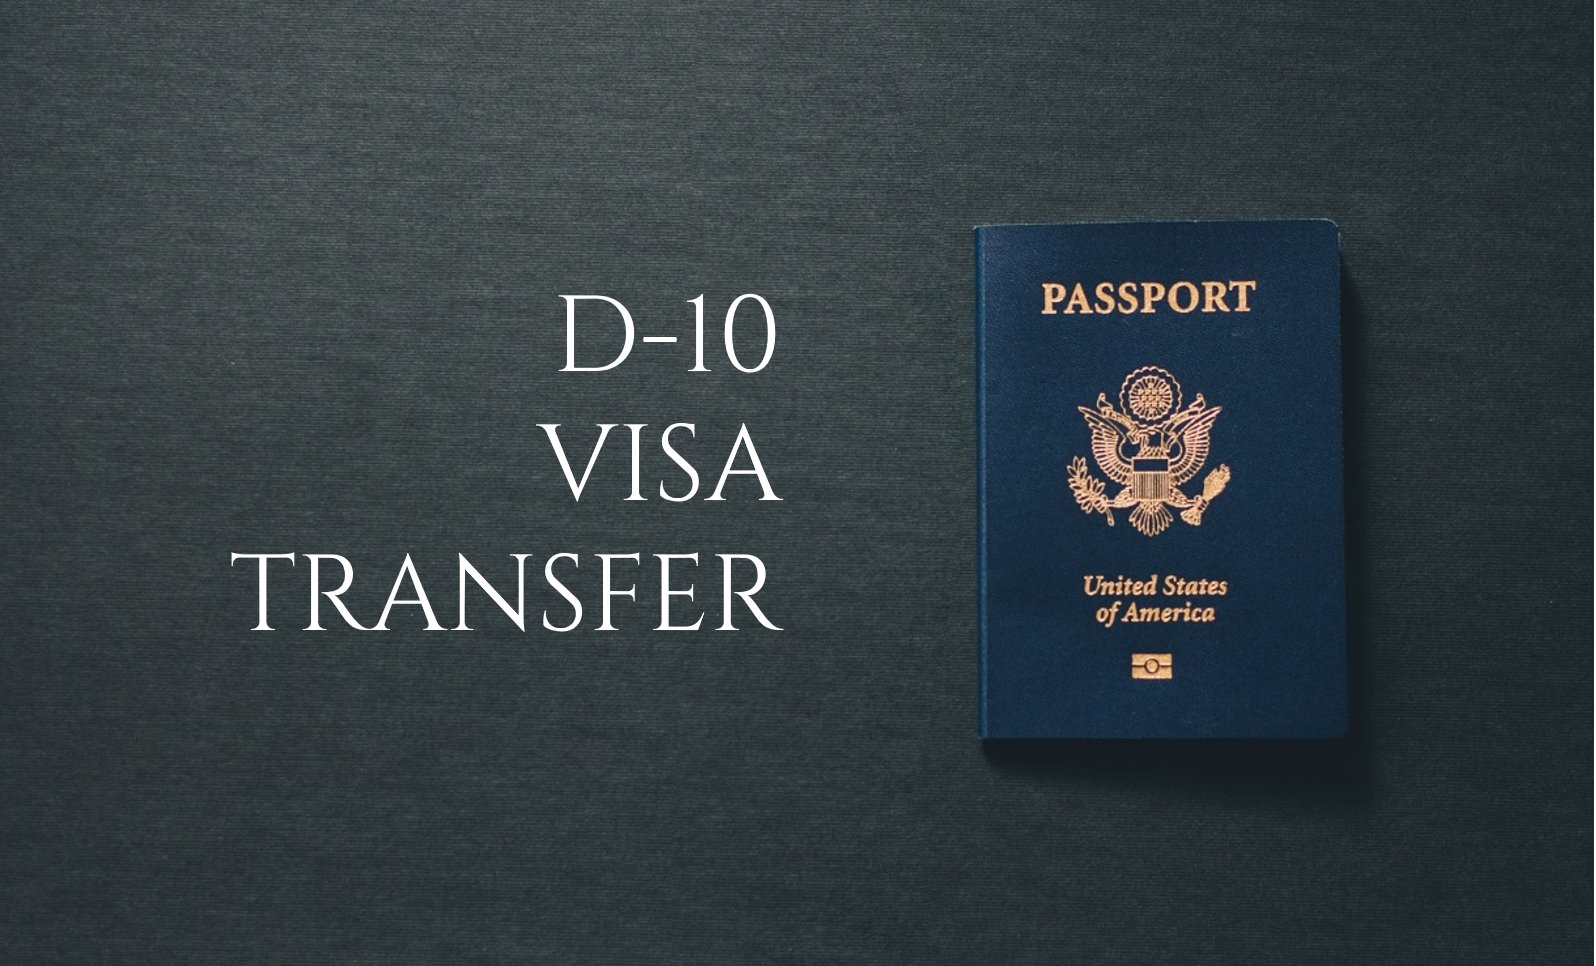 D-10 Visa Transfer